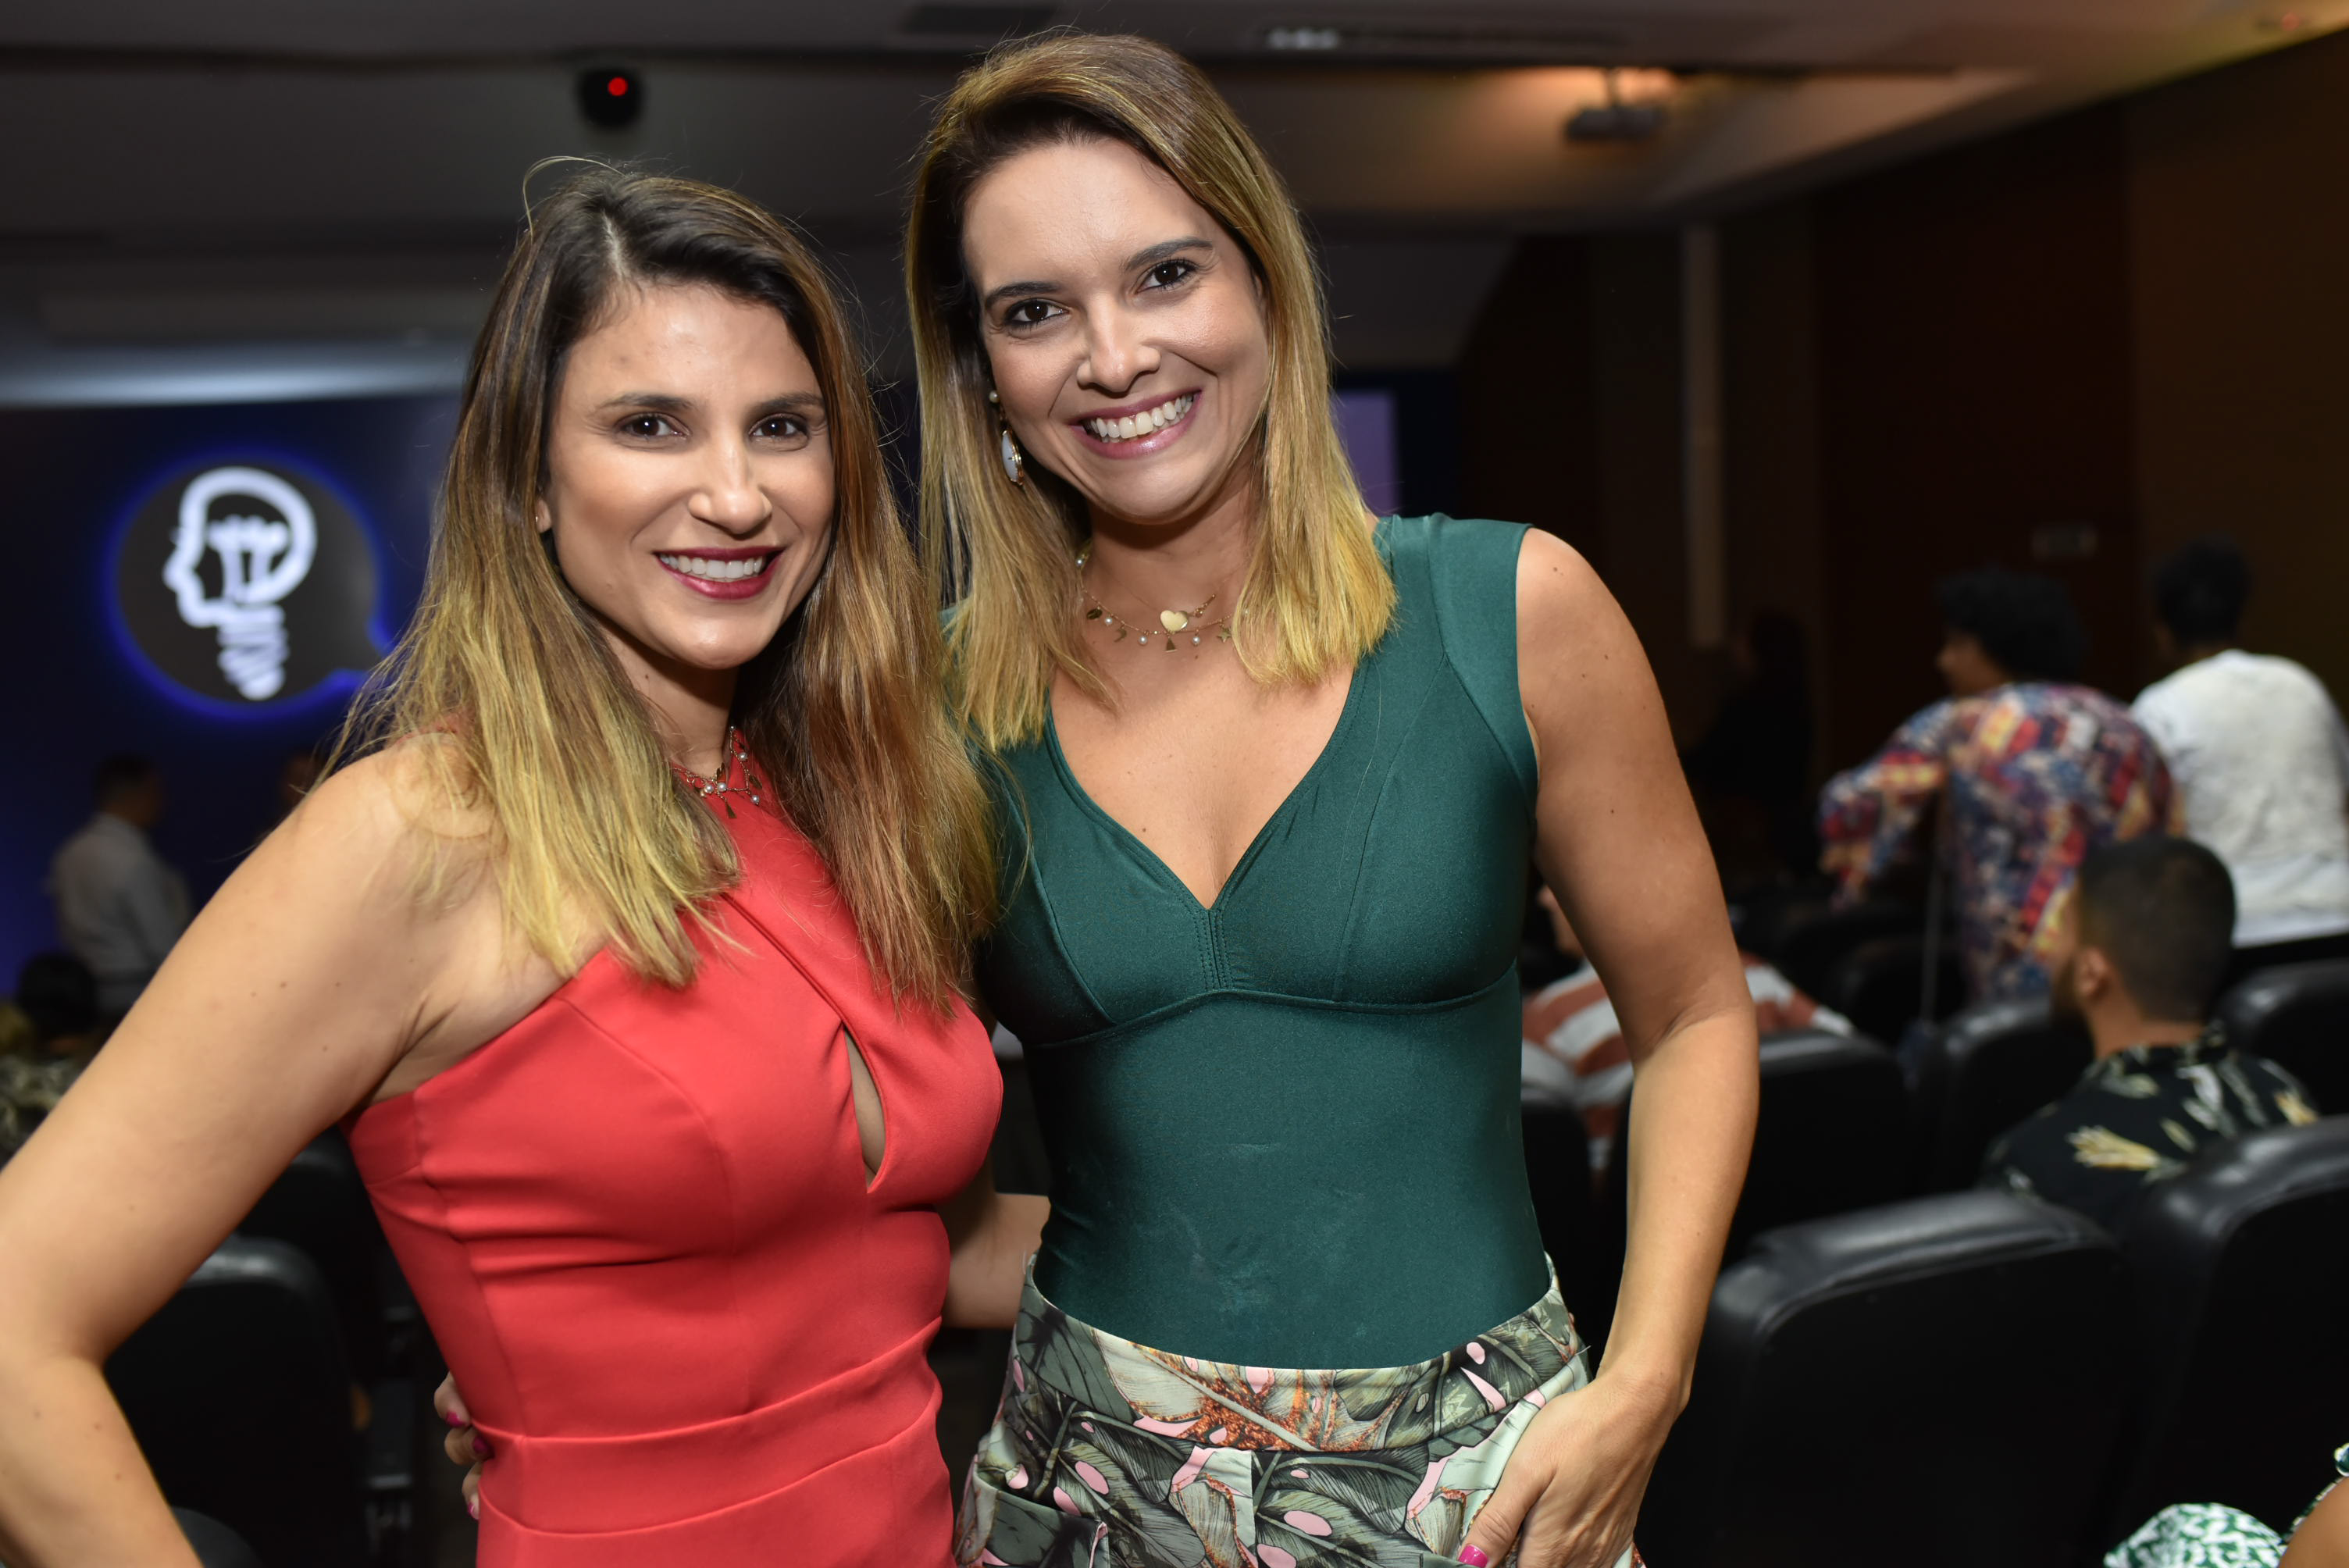 Roda de Conversa da Rede Gazeta 2020 - Dia Internacional da Mulher: Lurdinha Perovano e Denise Póvoa